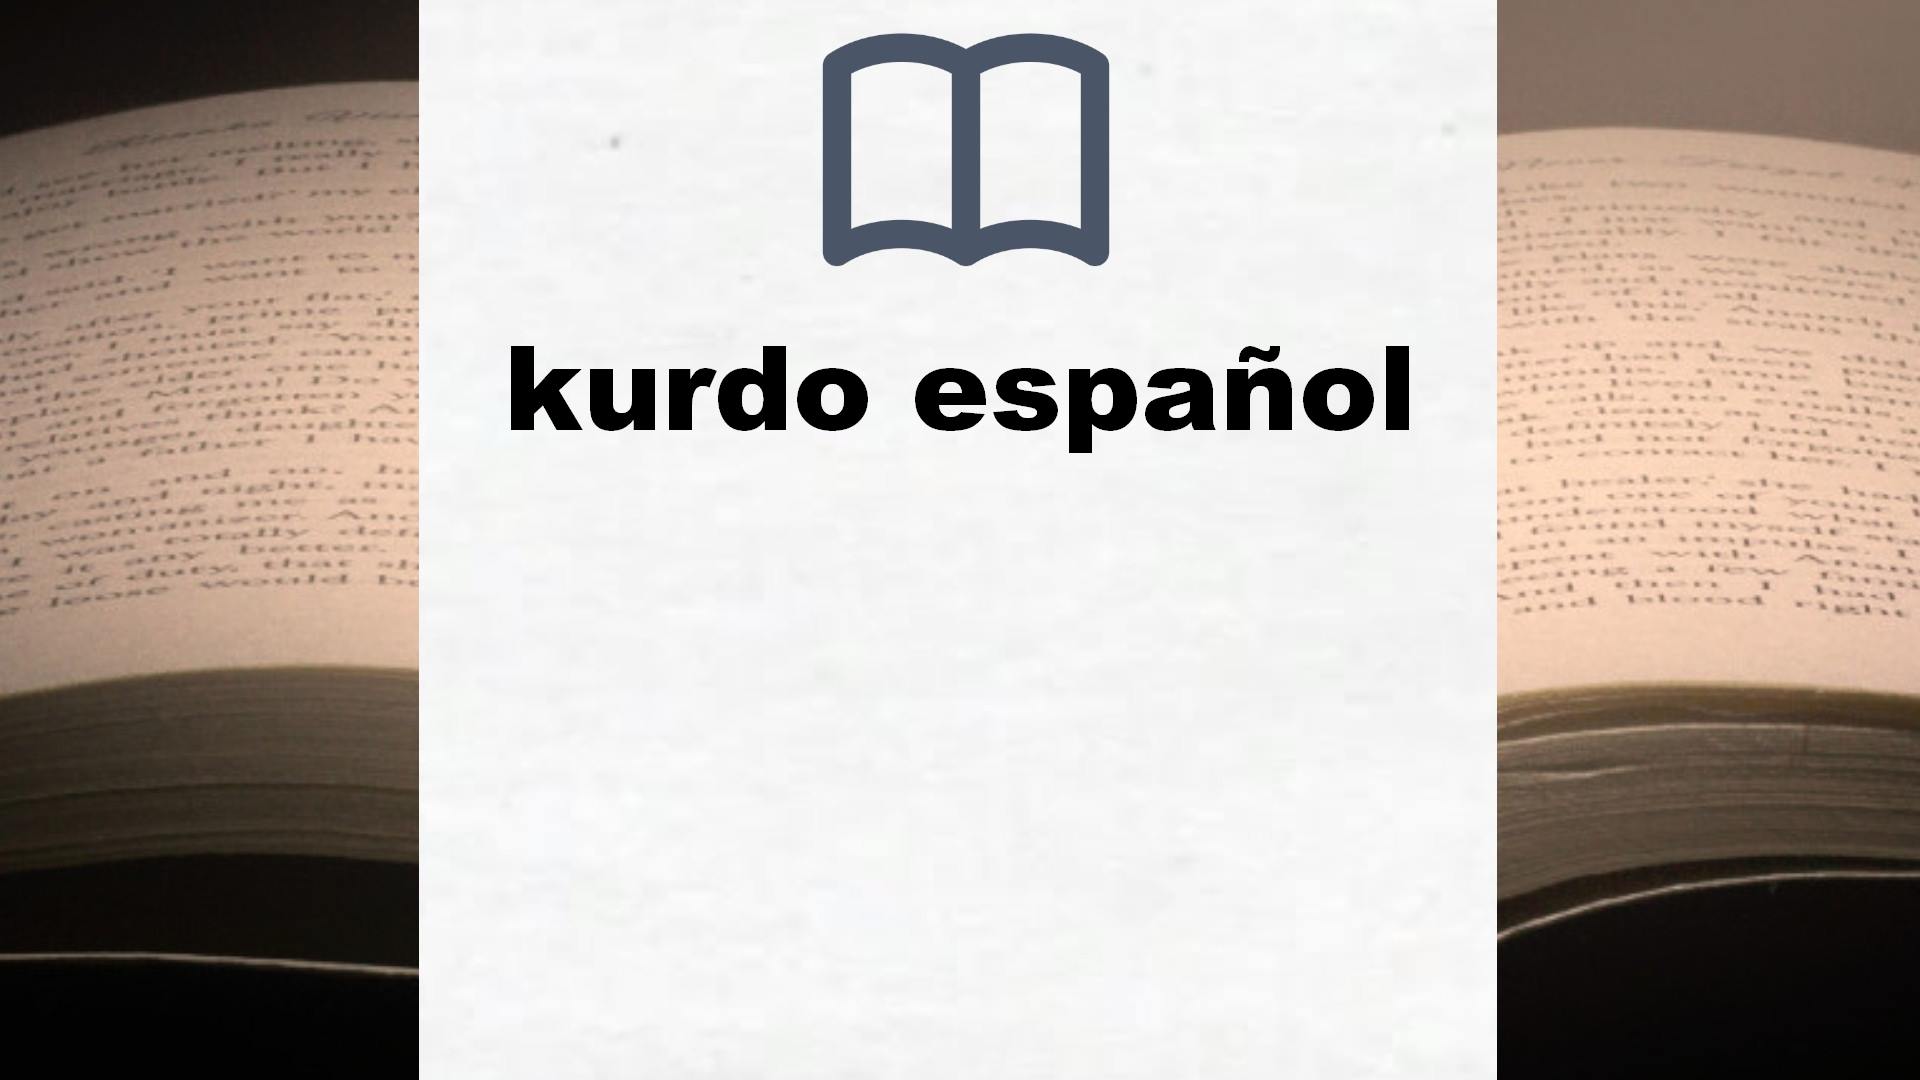 Libros sobre kurdo español